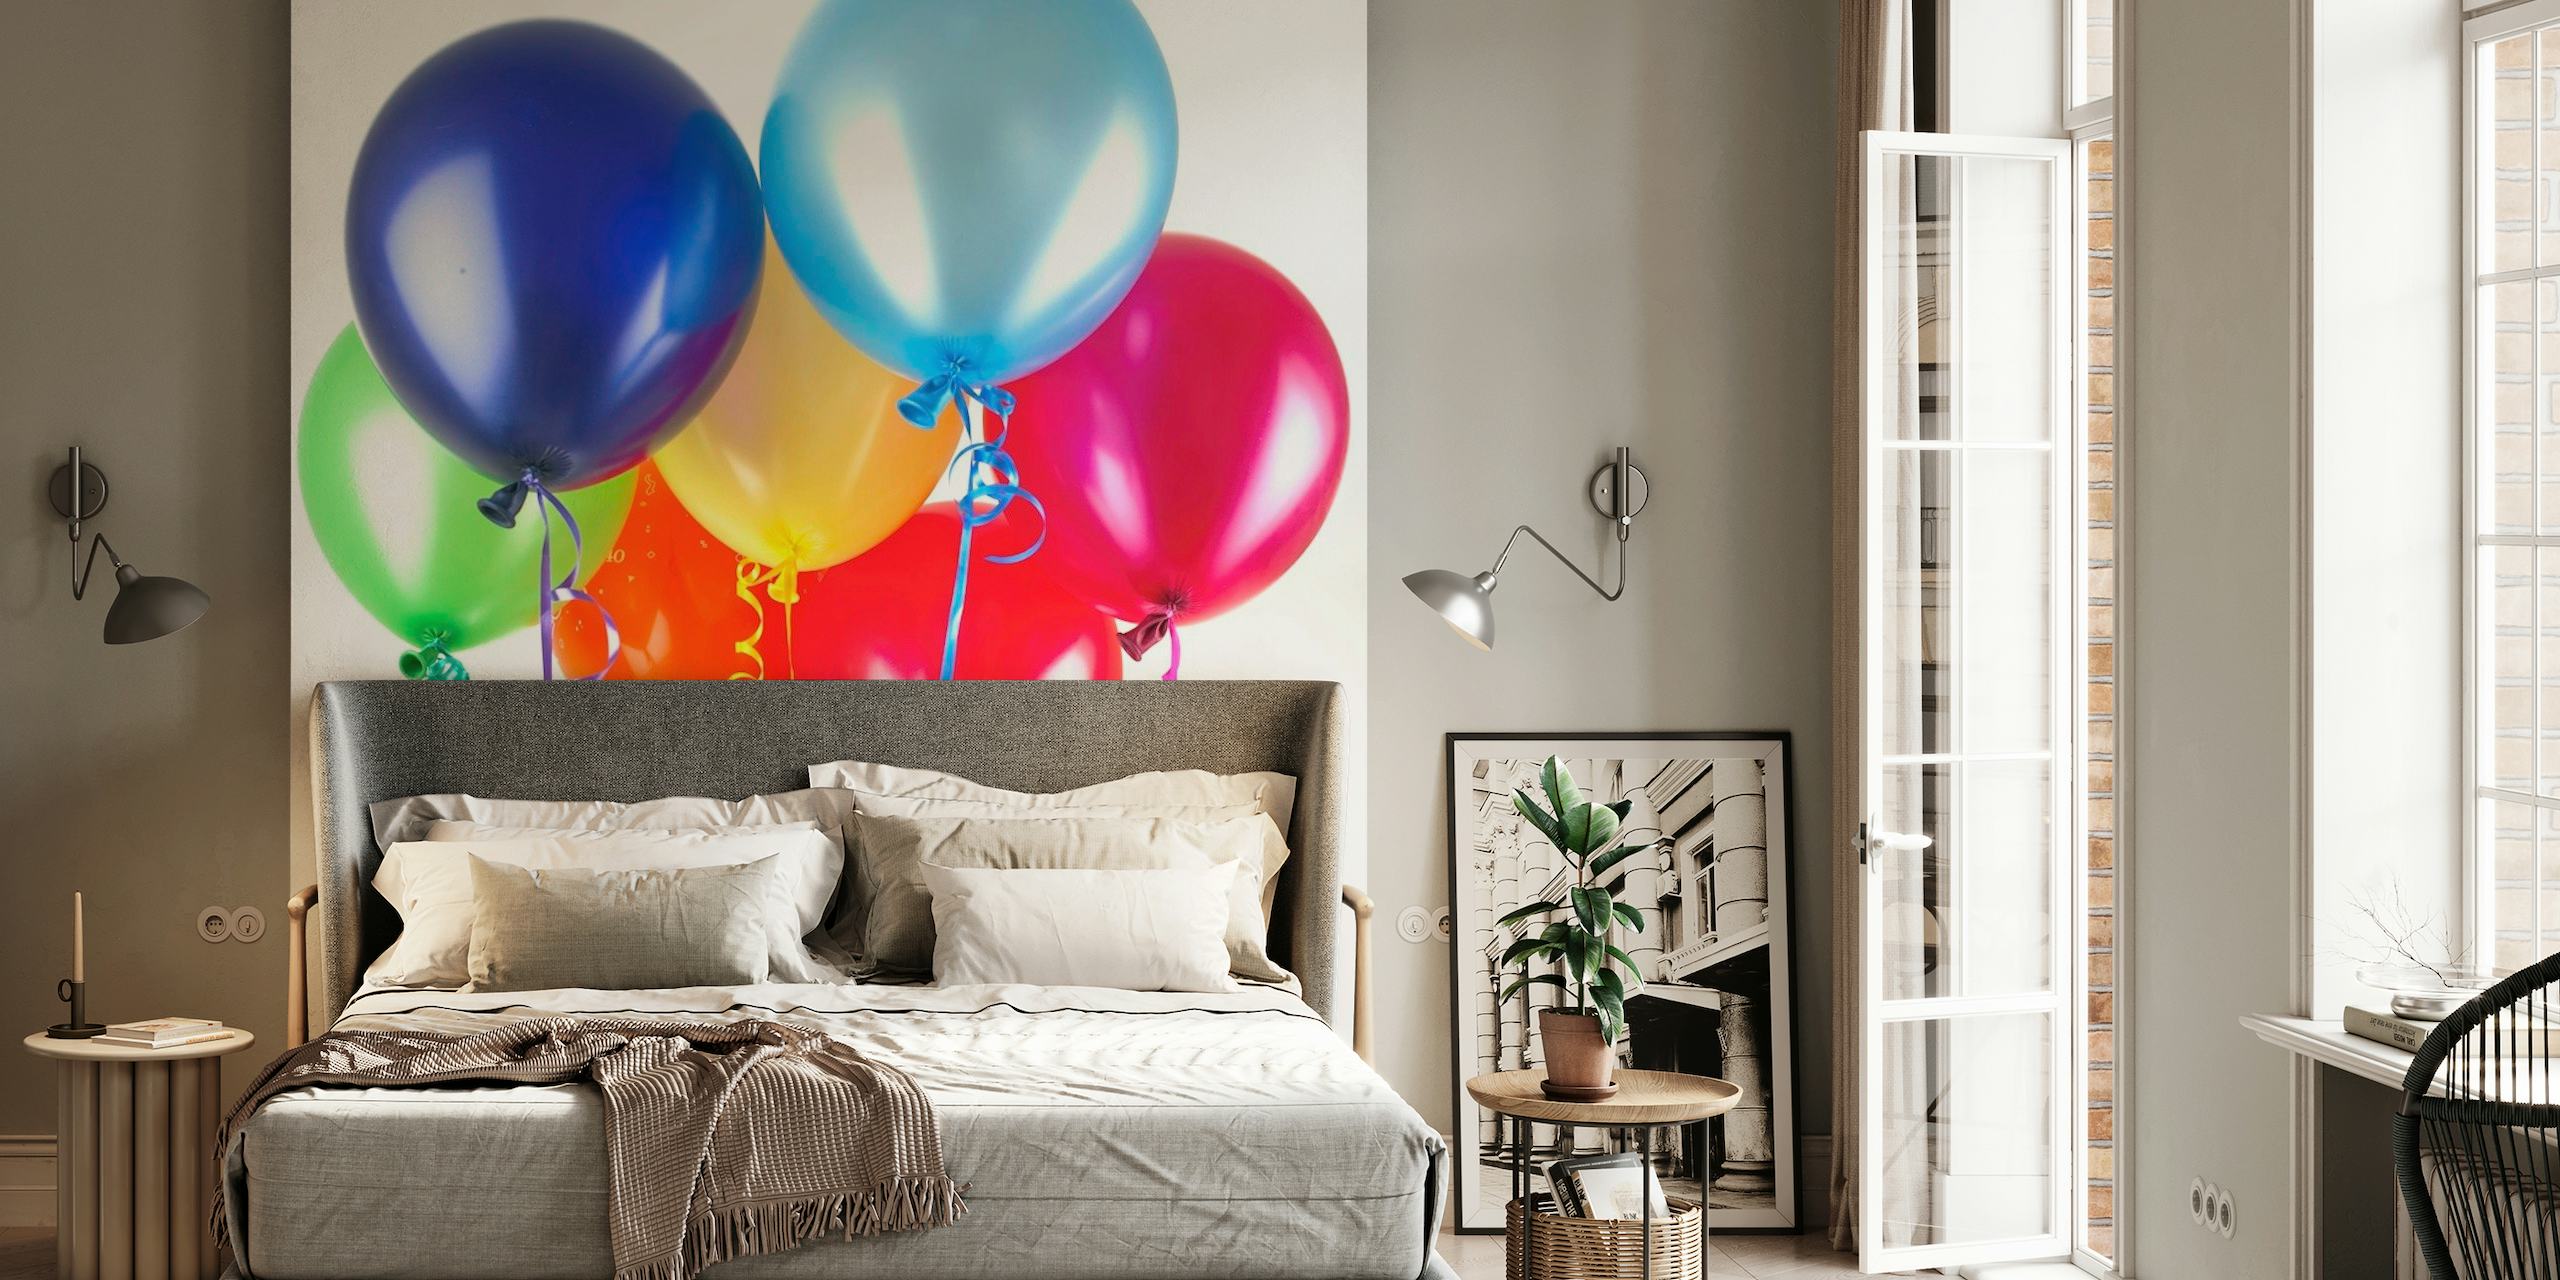 Uma variedade vibrante de balões coloridos em um mural de parede